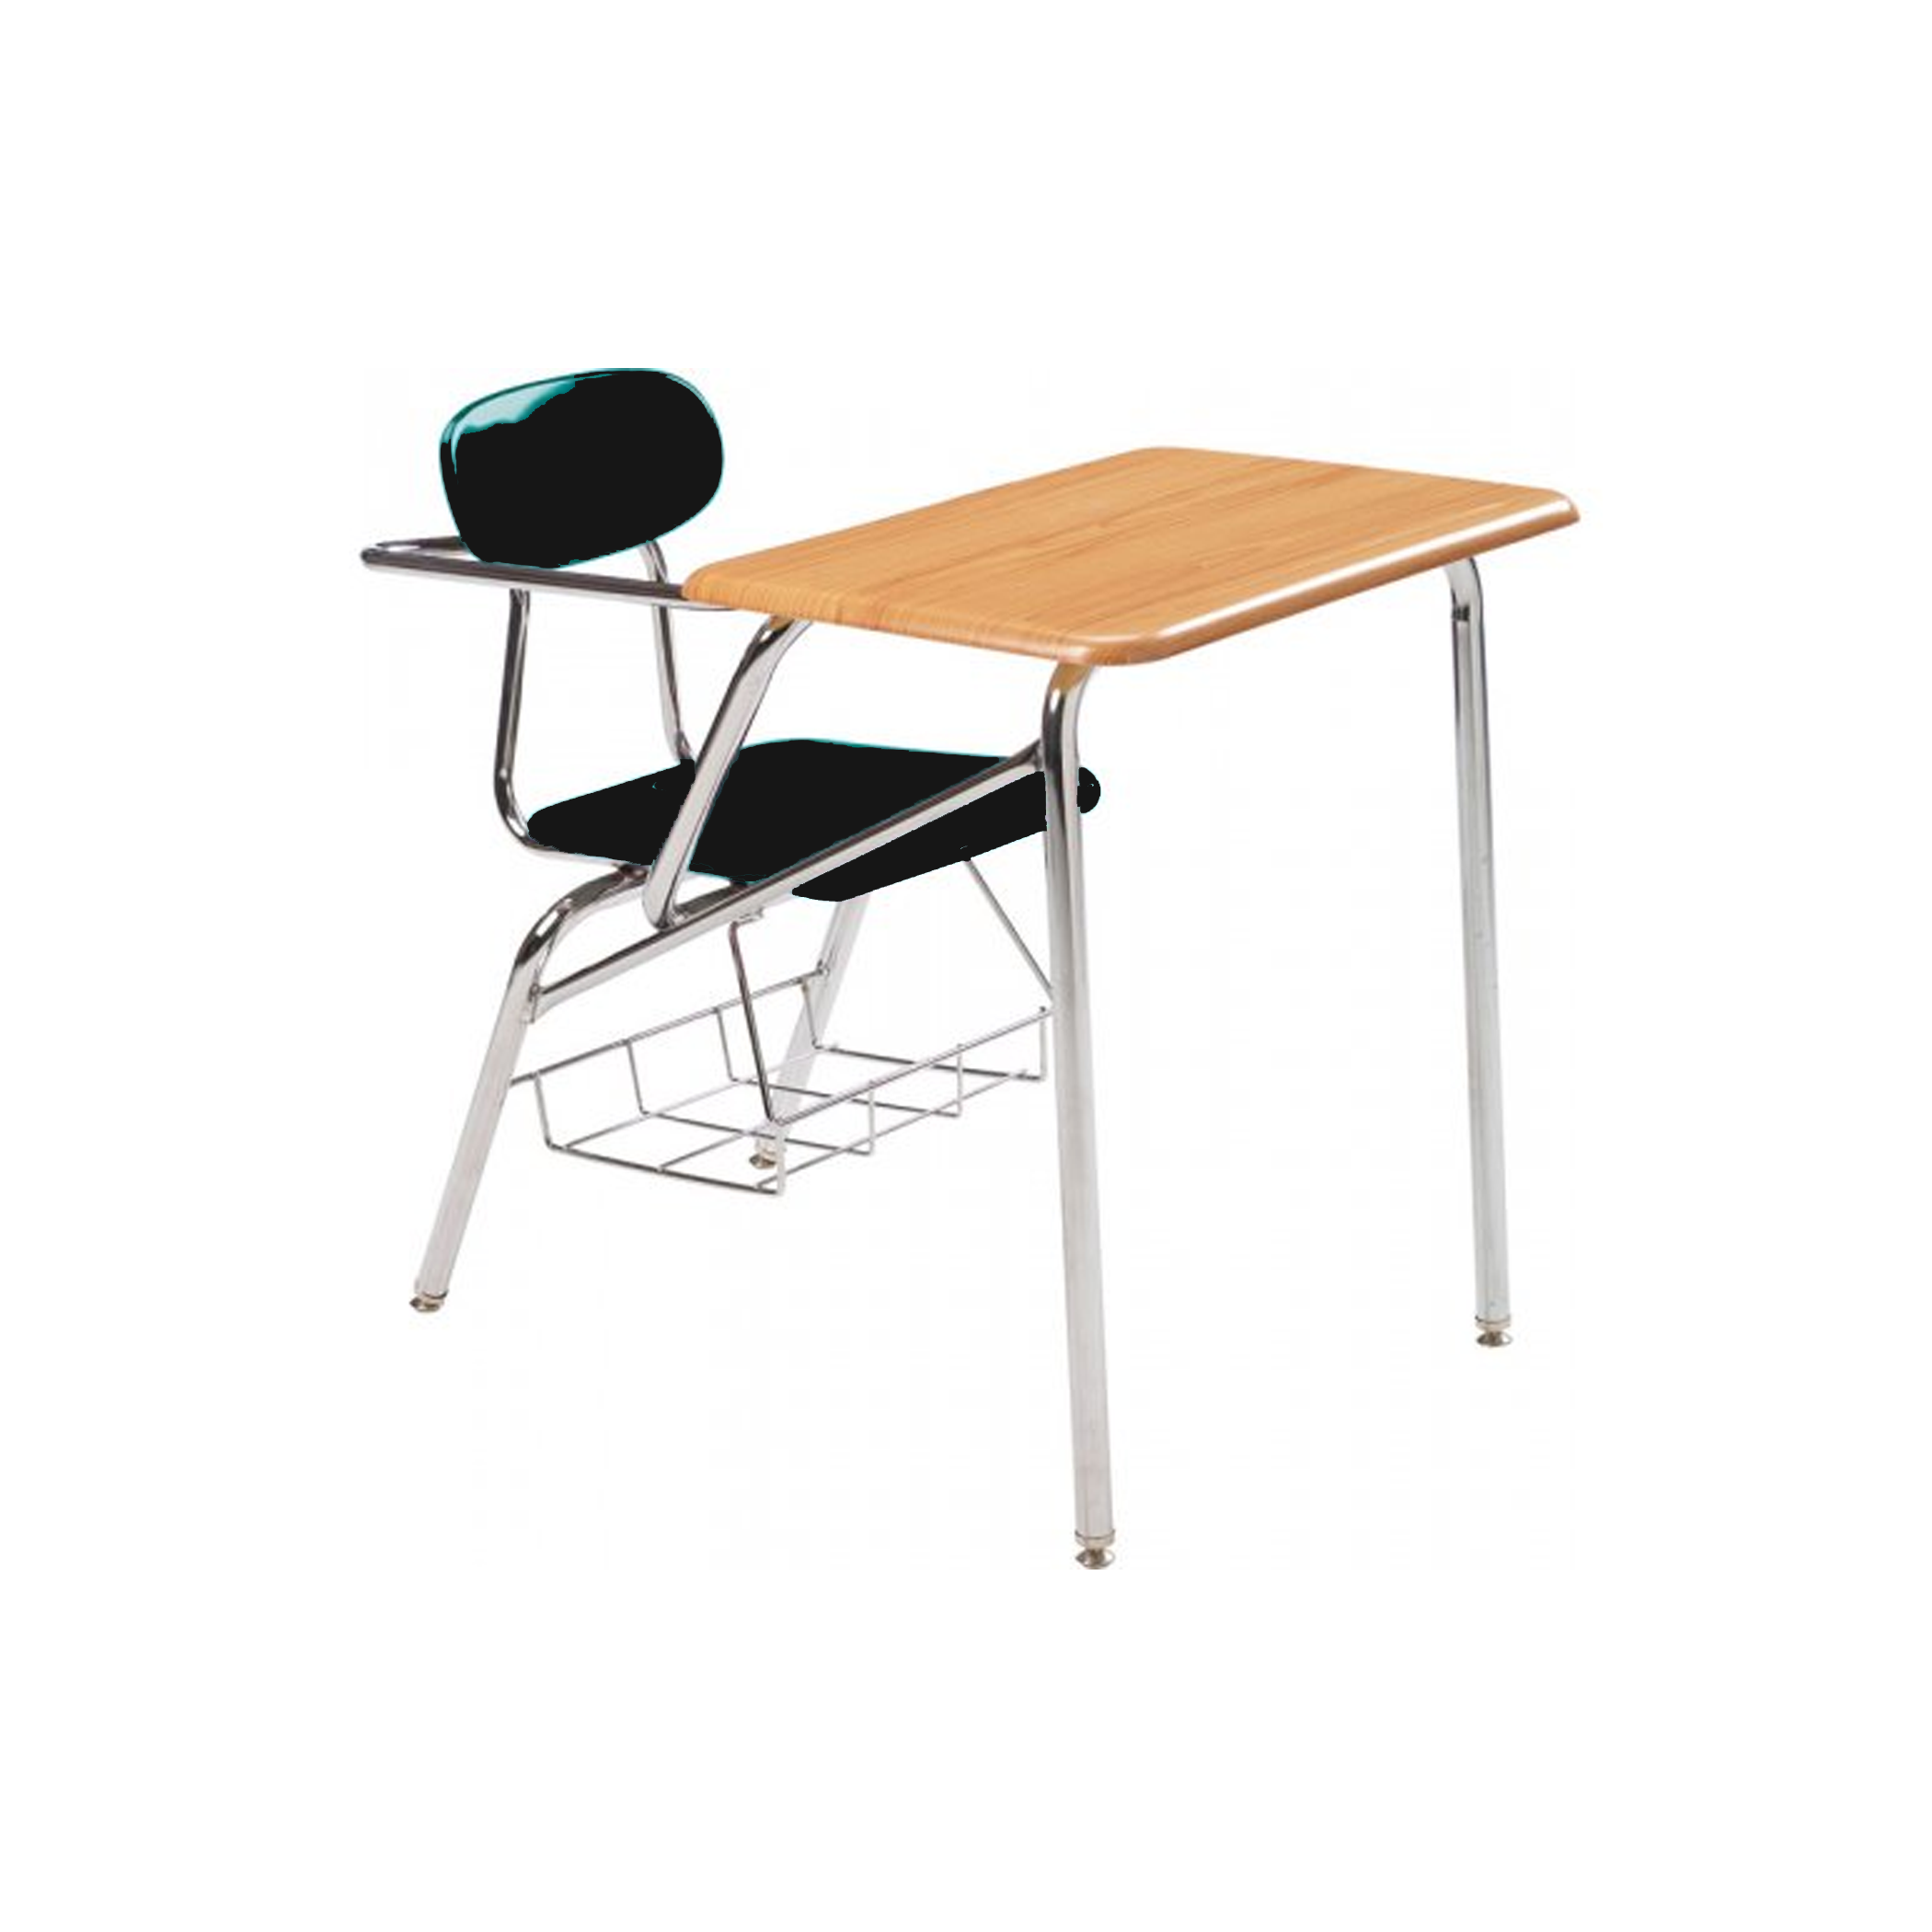 Combo Desk with Support Brace - RH- Lt Oak Woodstone - Black Seat - 14"H